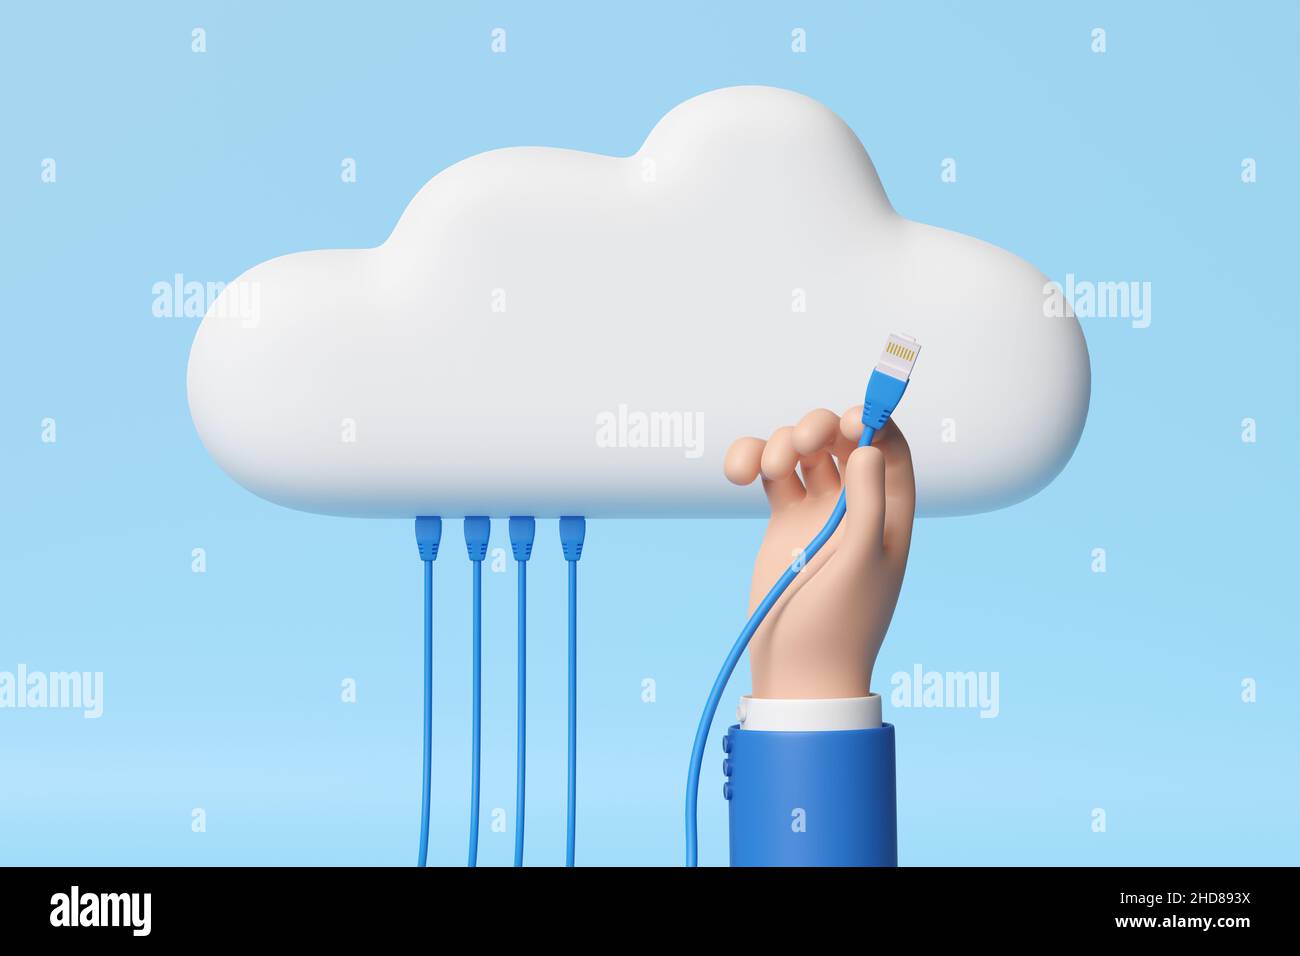 Main de dessin animé connectant un câble réseau à un nuage.3d illustration. Banque D'Images